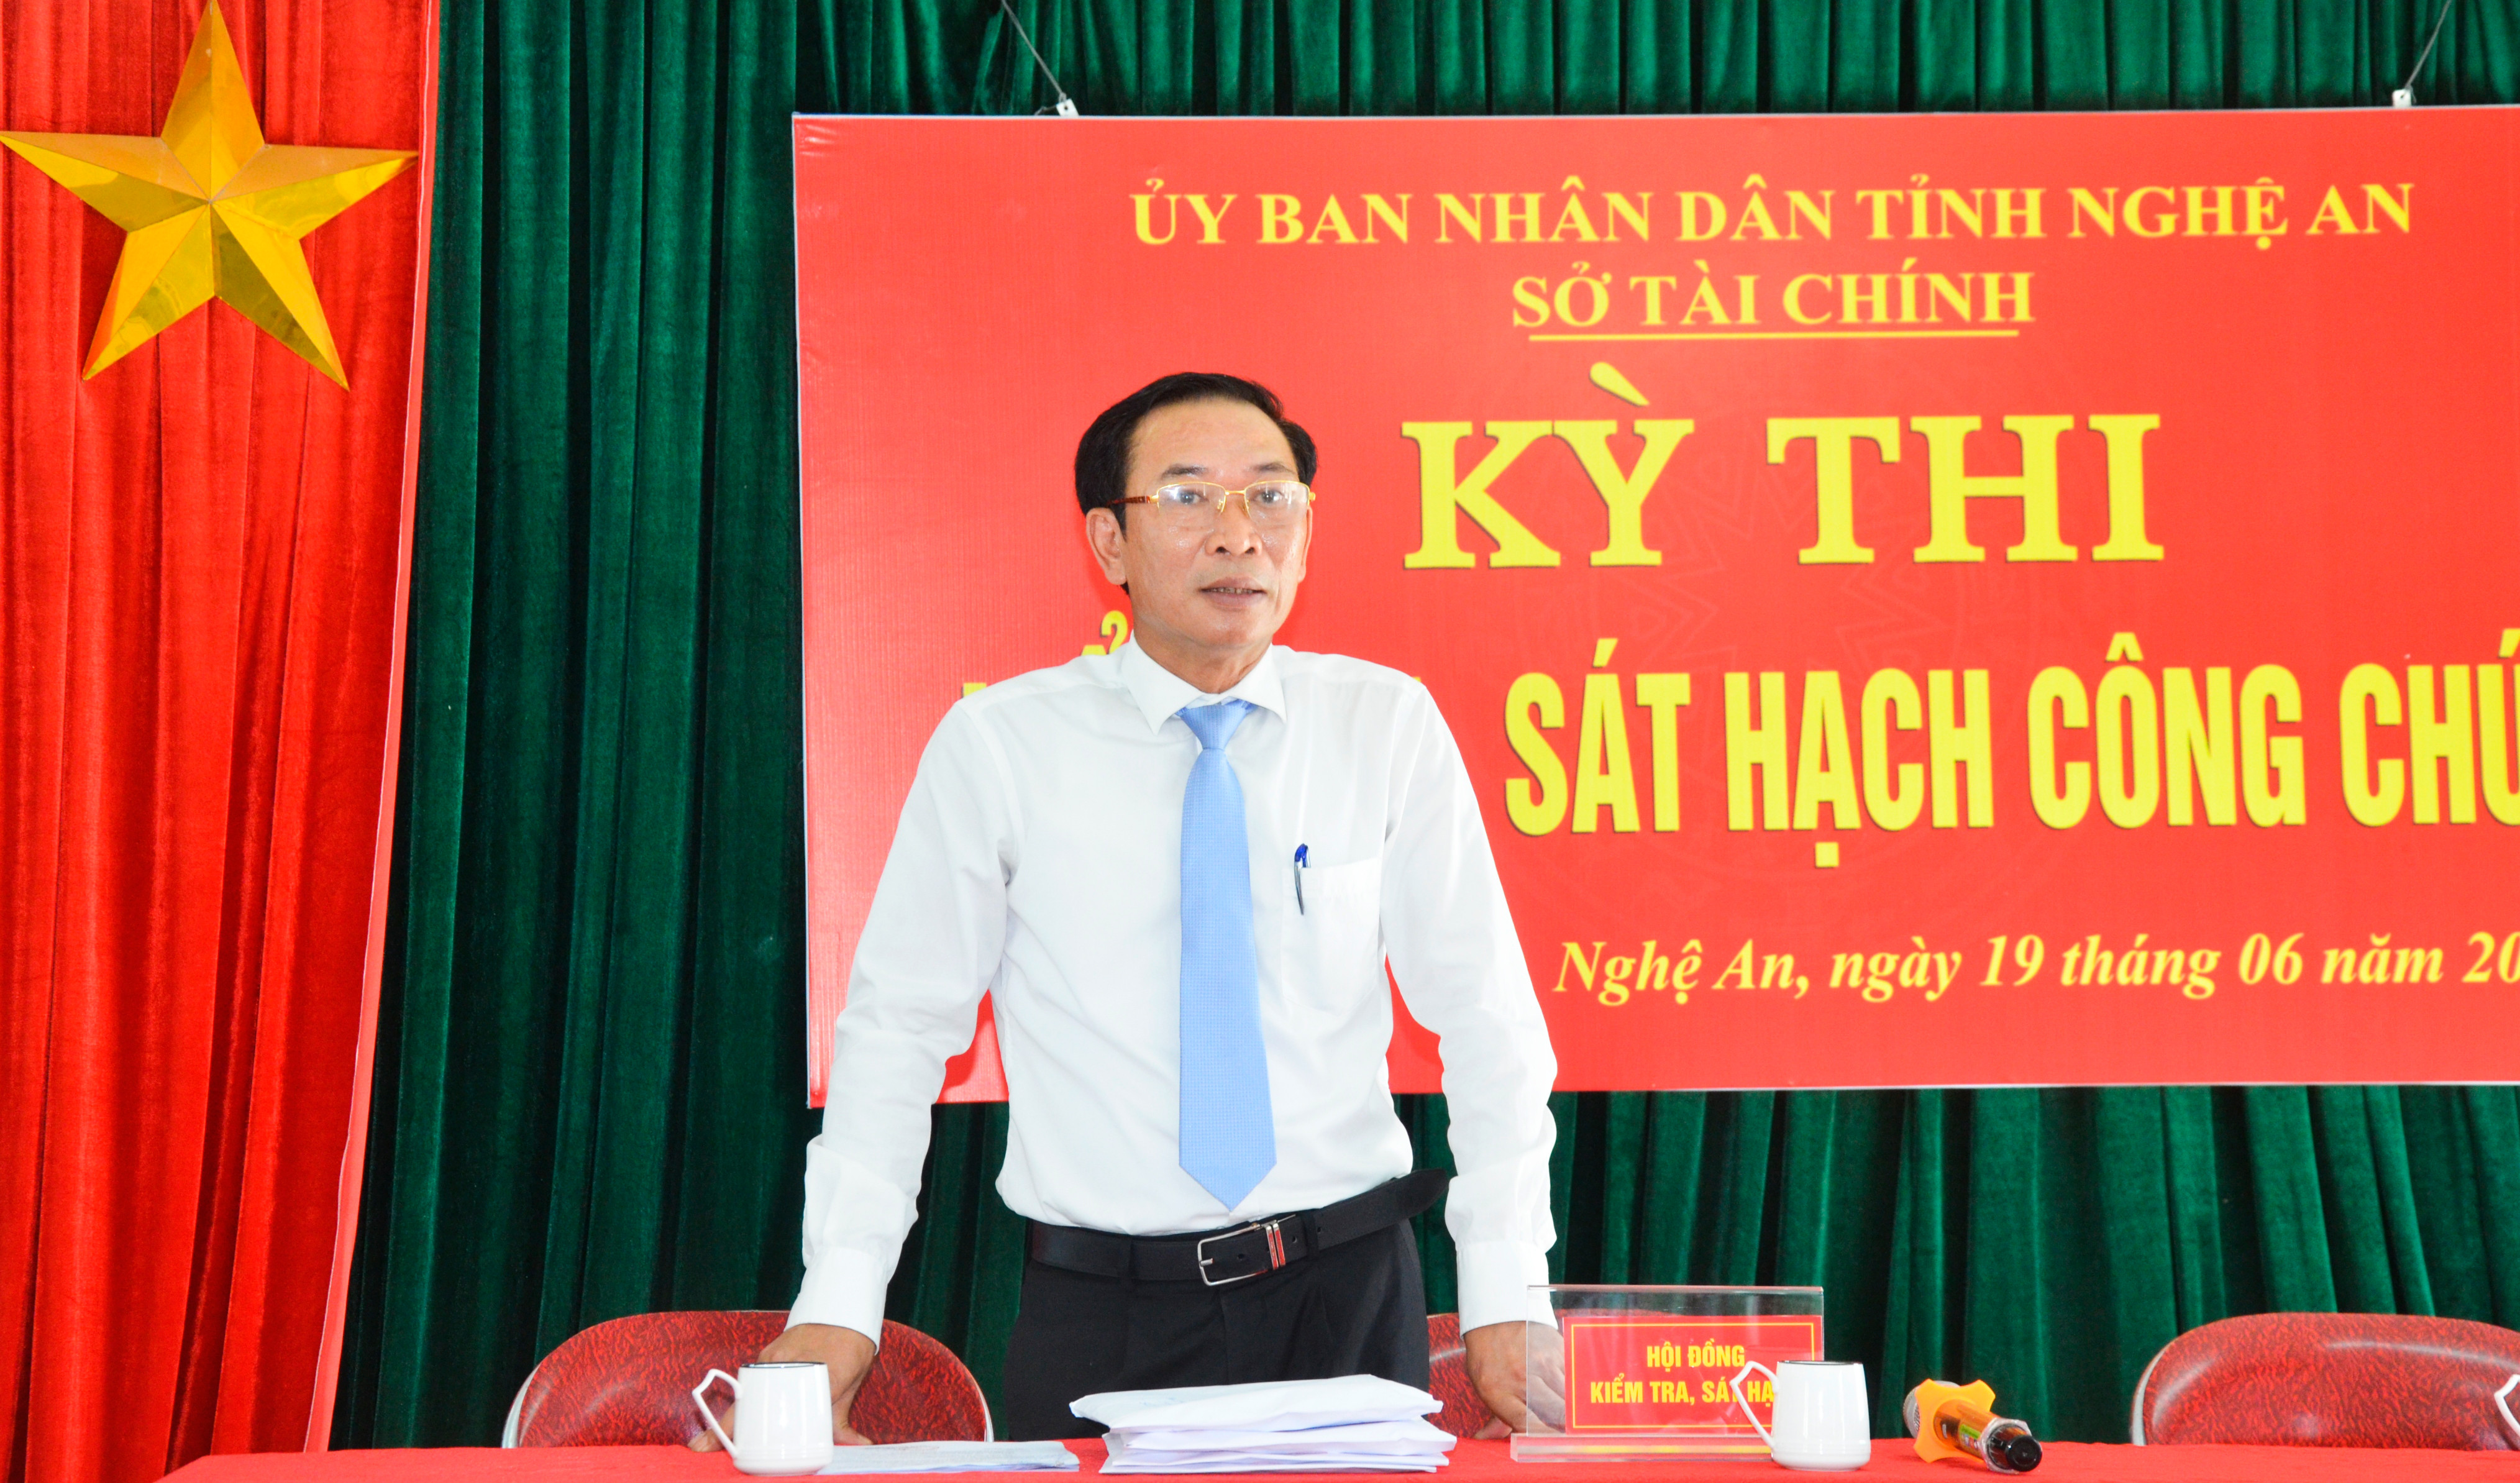 Giám đốc Sở Tài chính Nguyễn Xuân Hải phát biểu khai mạc kỳ thi kiểm tra, sát hạch công chức. Ảnh: Thanh Lê